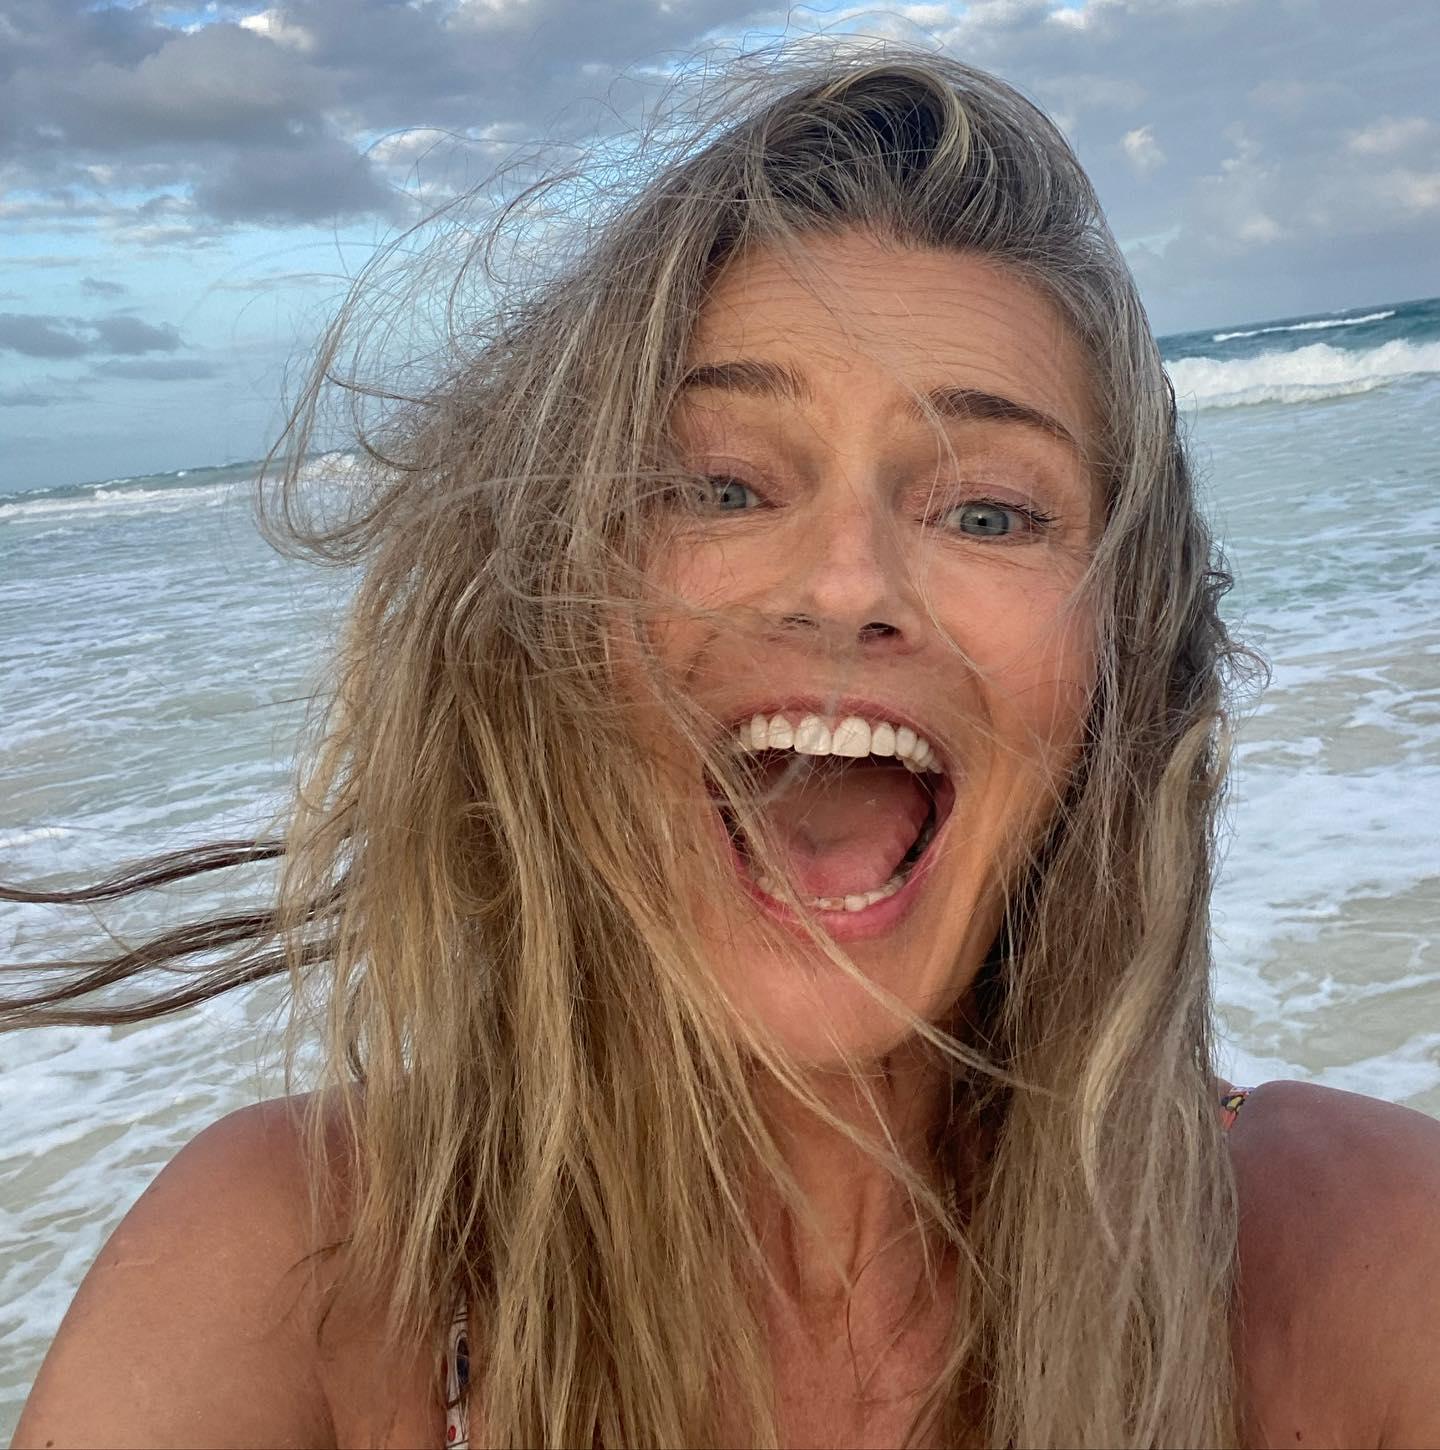 Paulina Porizkova takes a selfie at the beach